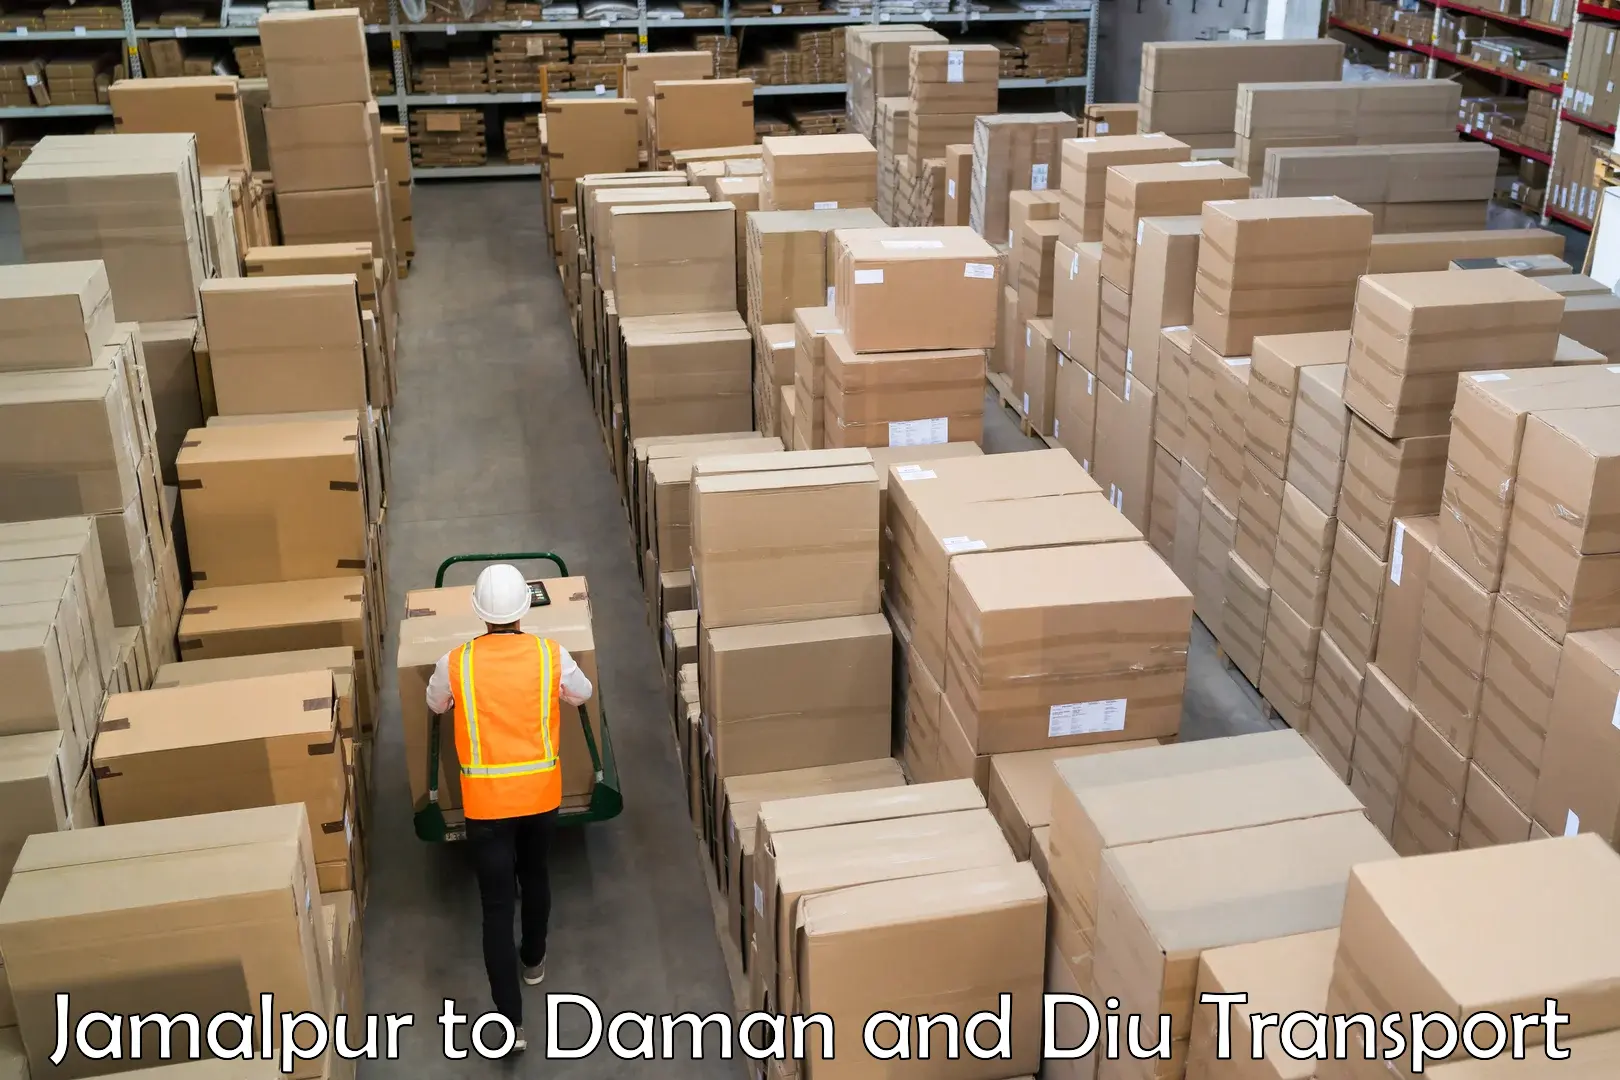 India truck logistics services Jamalpur to Daman and Diu